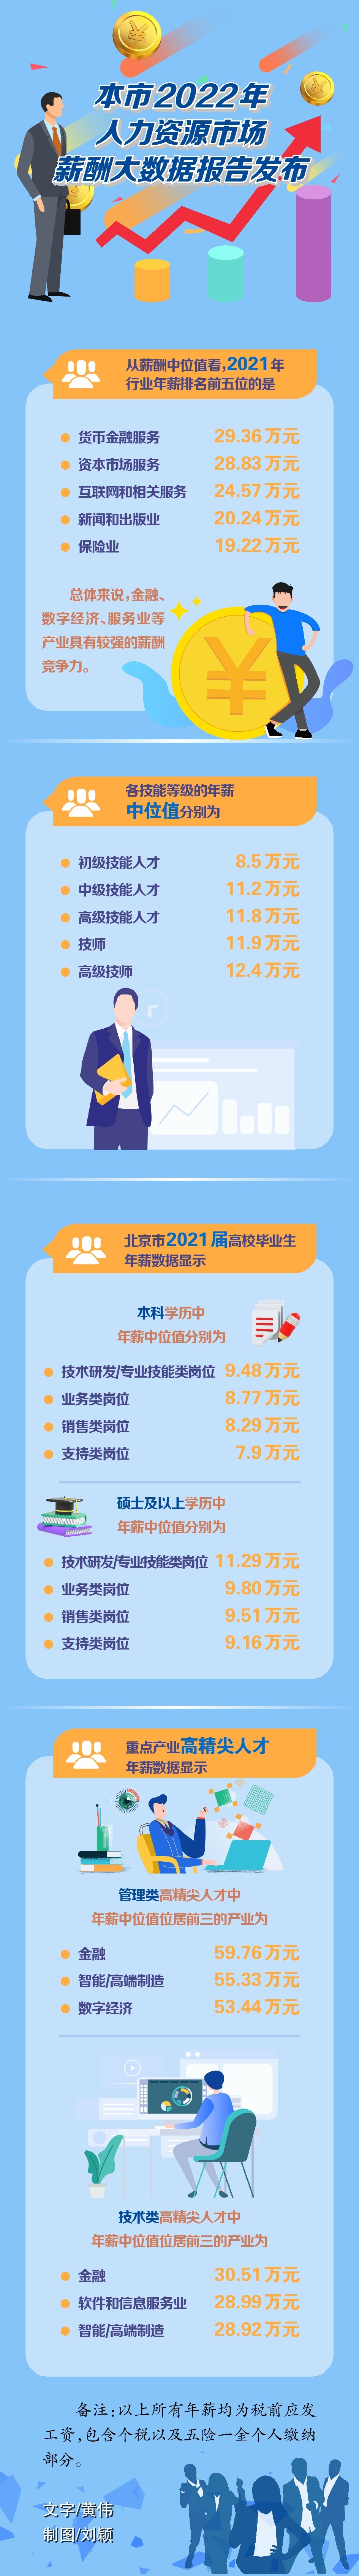 北京发布2022年薪酬大数据报告各行业薪酬水平整体上涨